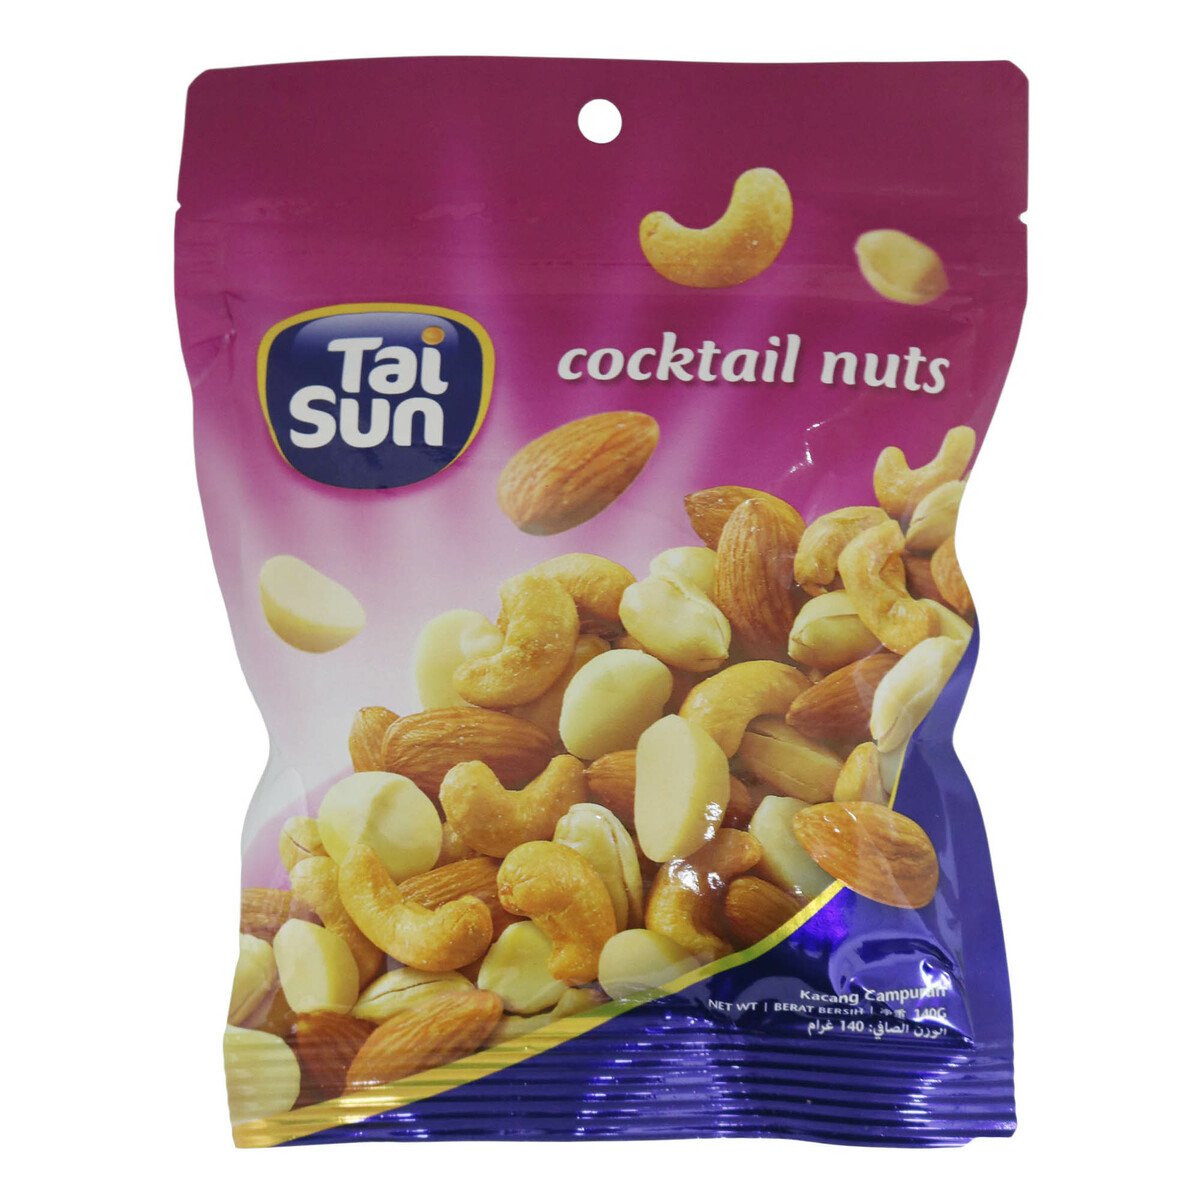 Tai Sun Cocktail Nuts 140g